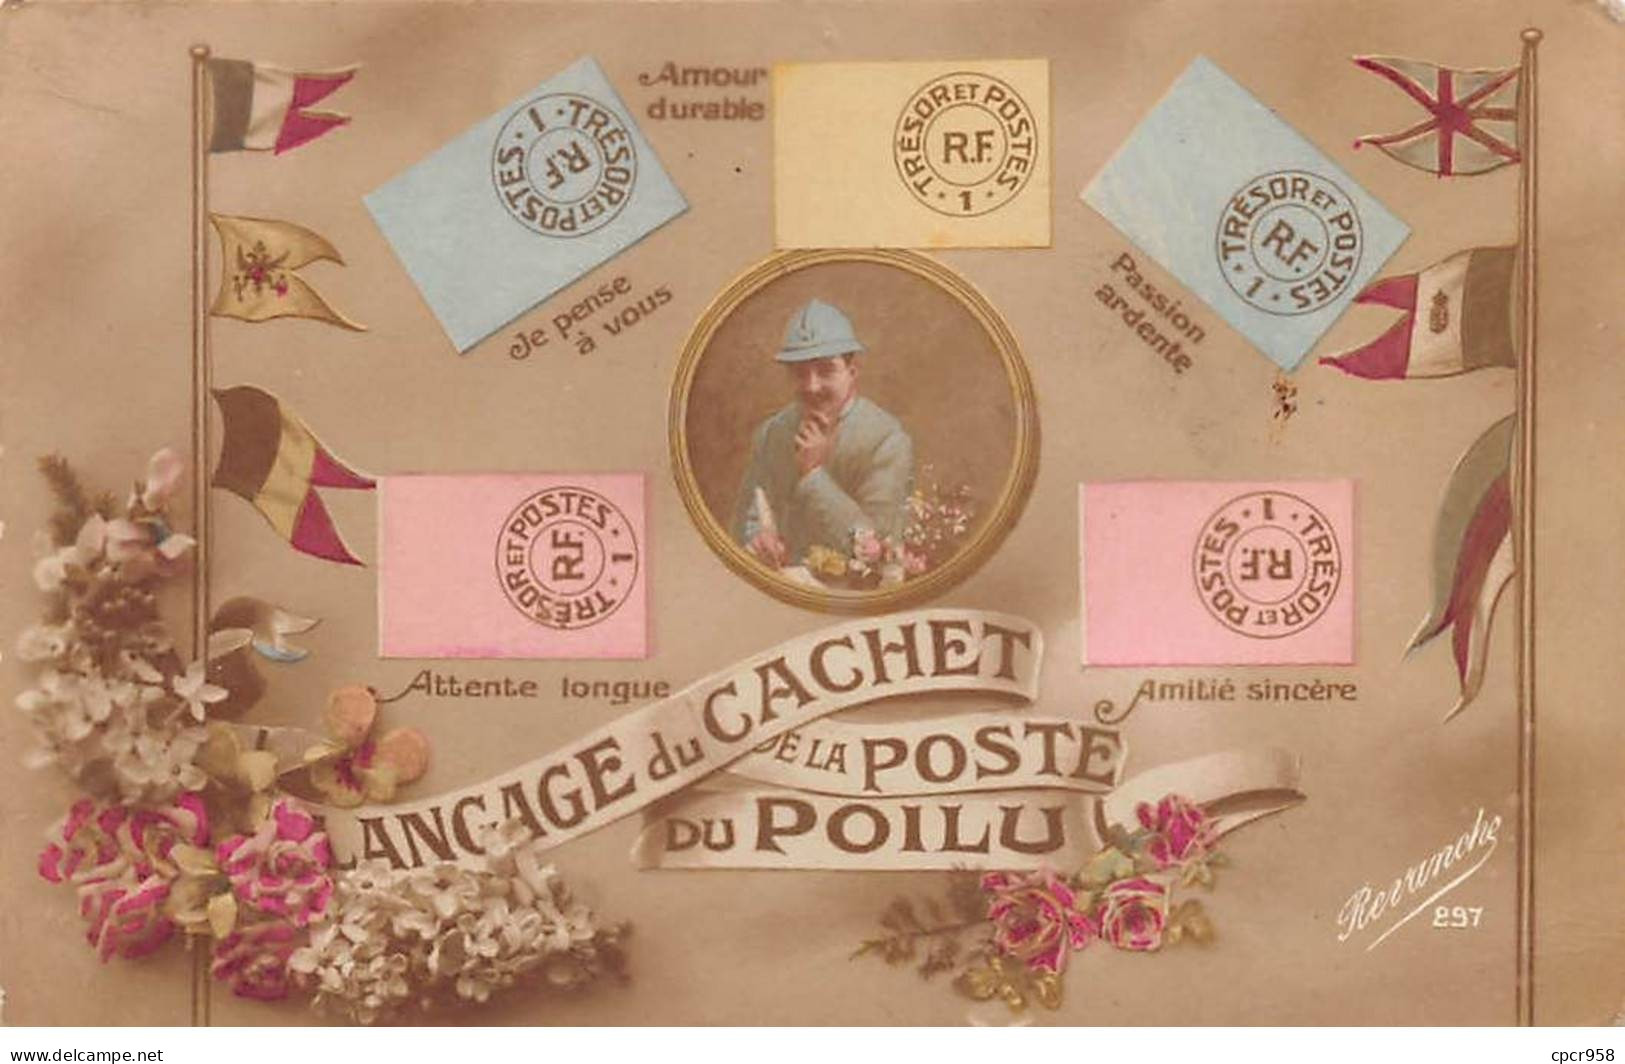 Représentations Timbres - N°90875 - Langage Du Cachet De La Poste Du Poilu - Amour Durable, Passion Ardente .... - Stamps (pictures)